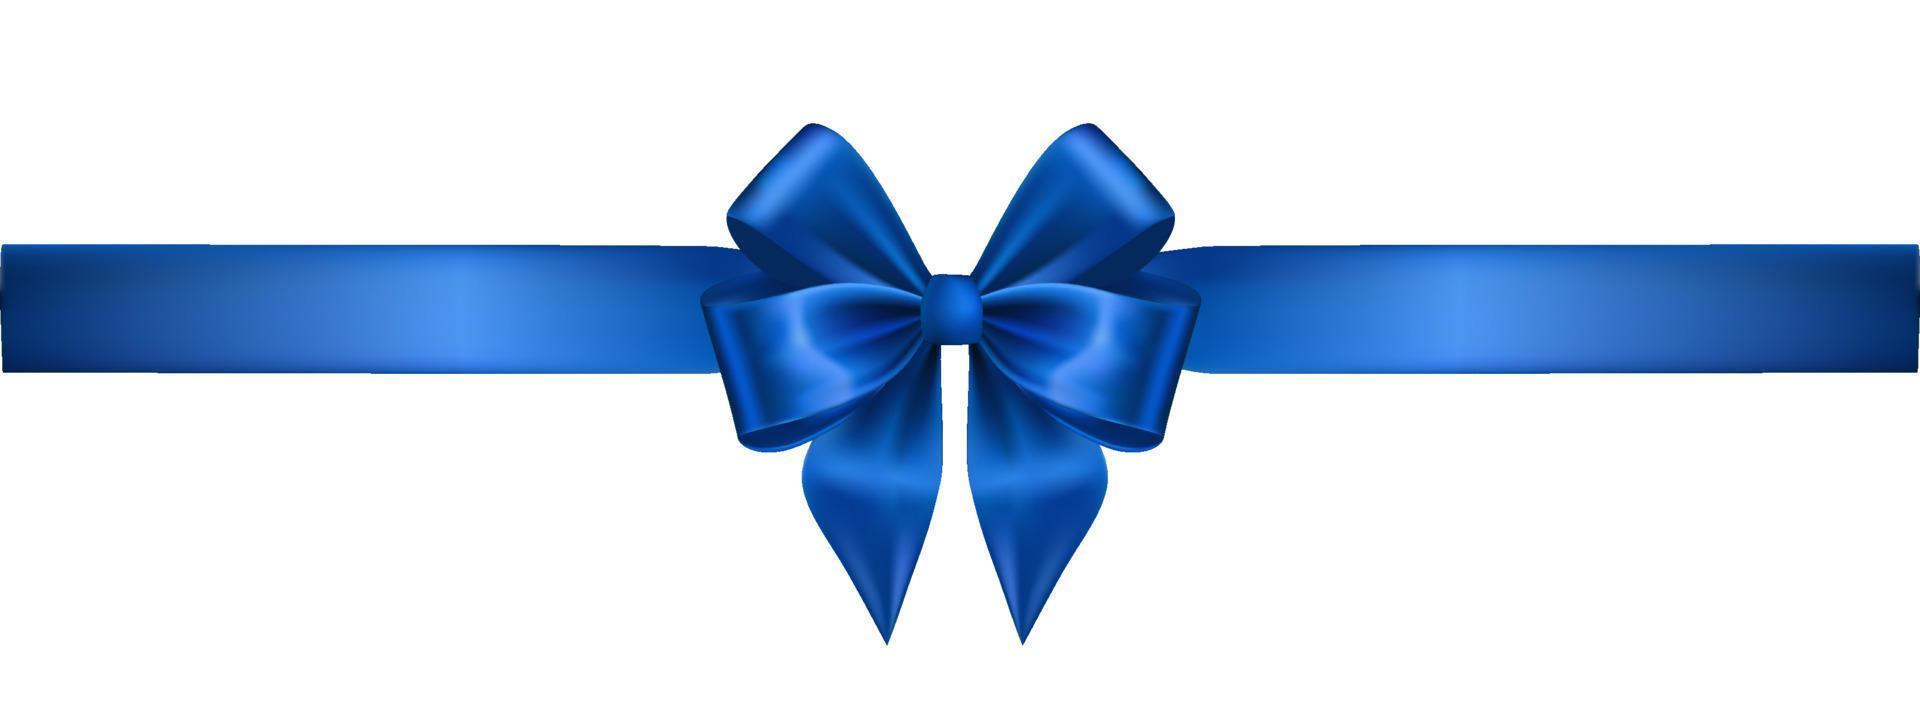 lazo realista de seda azul con cinta en blanco vector